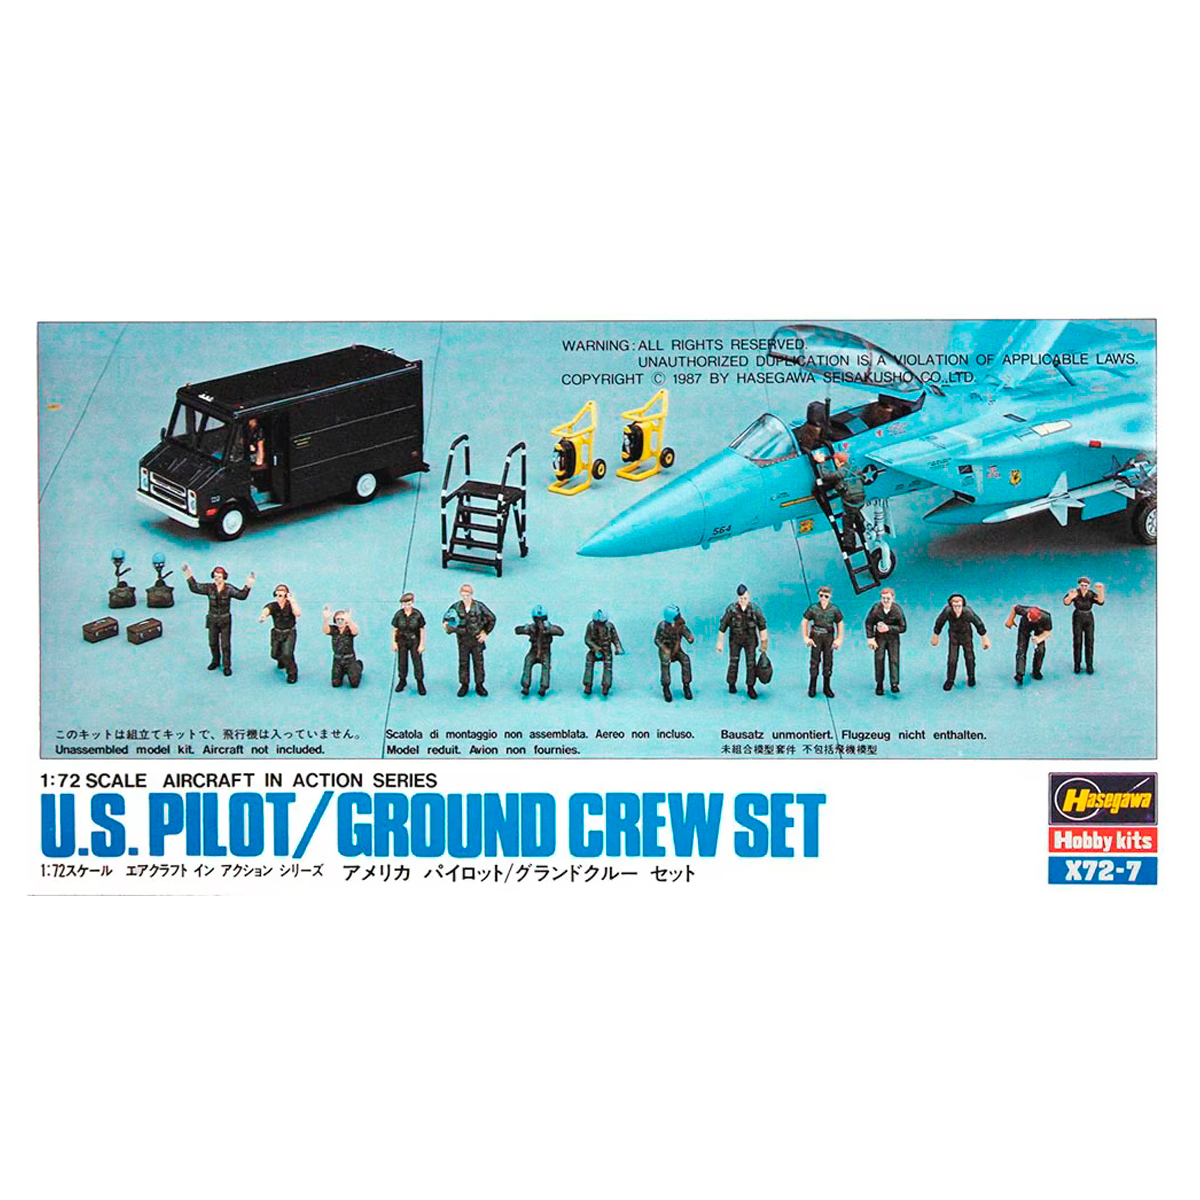 Hasegawa X72-7 – 35007 1/72 U.S Pilot & Crew Set